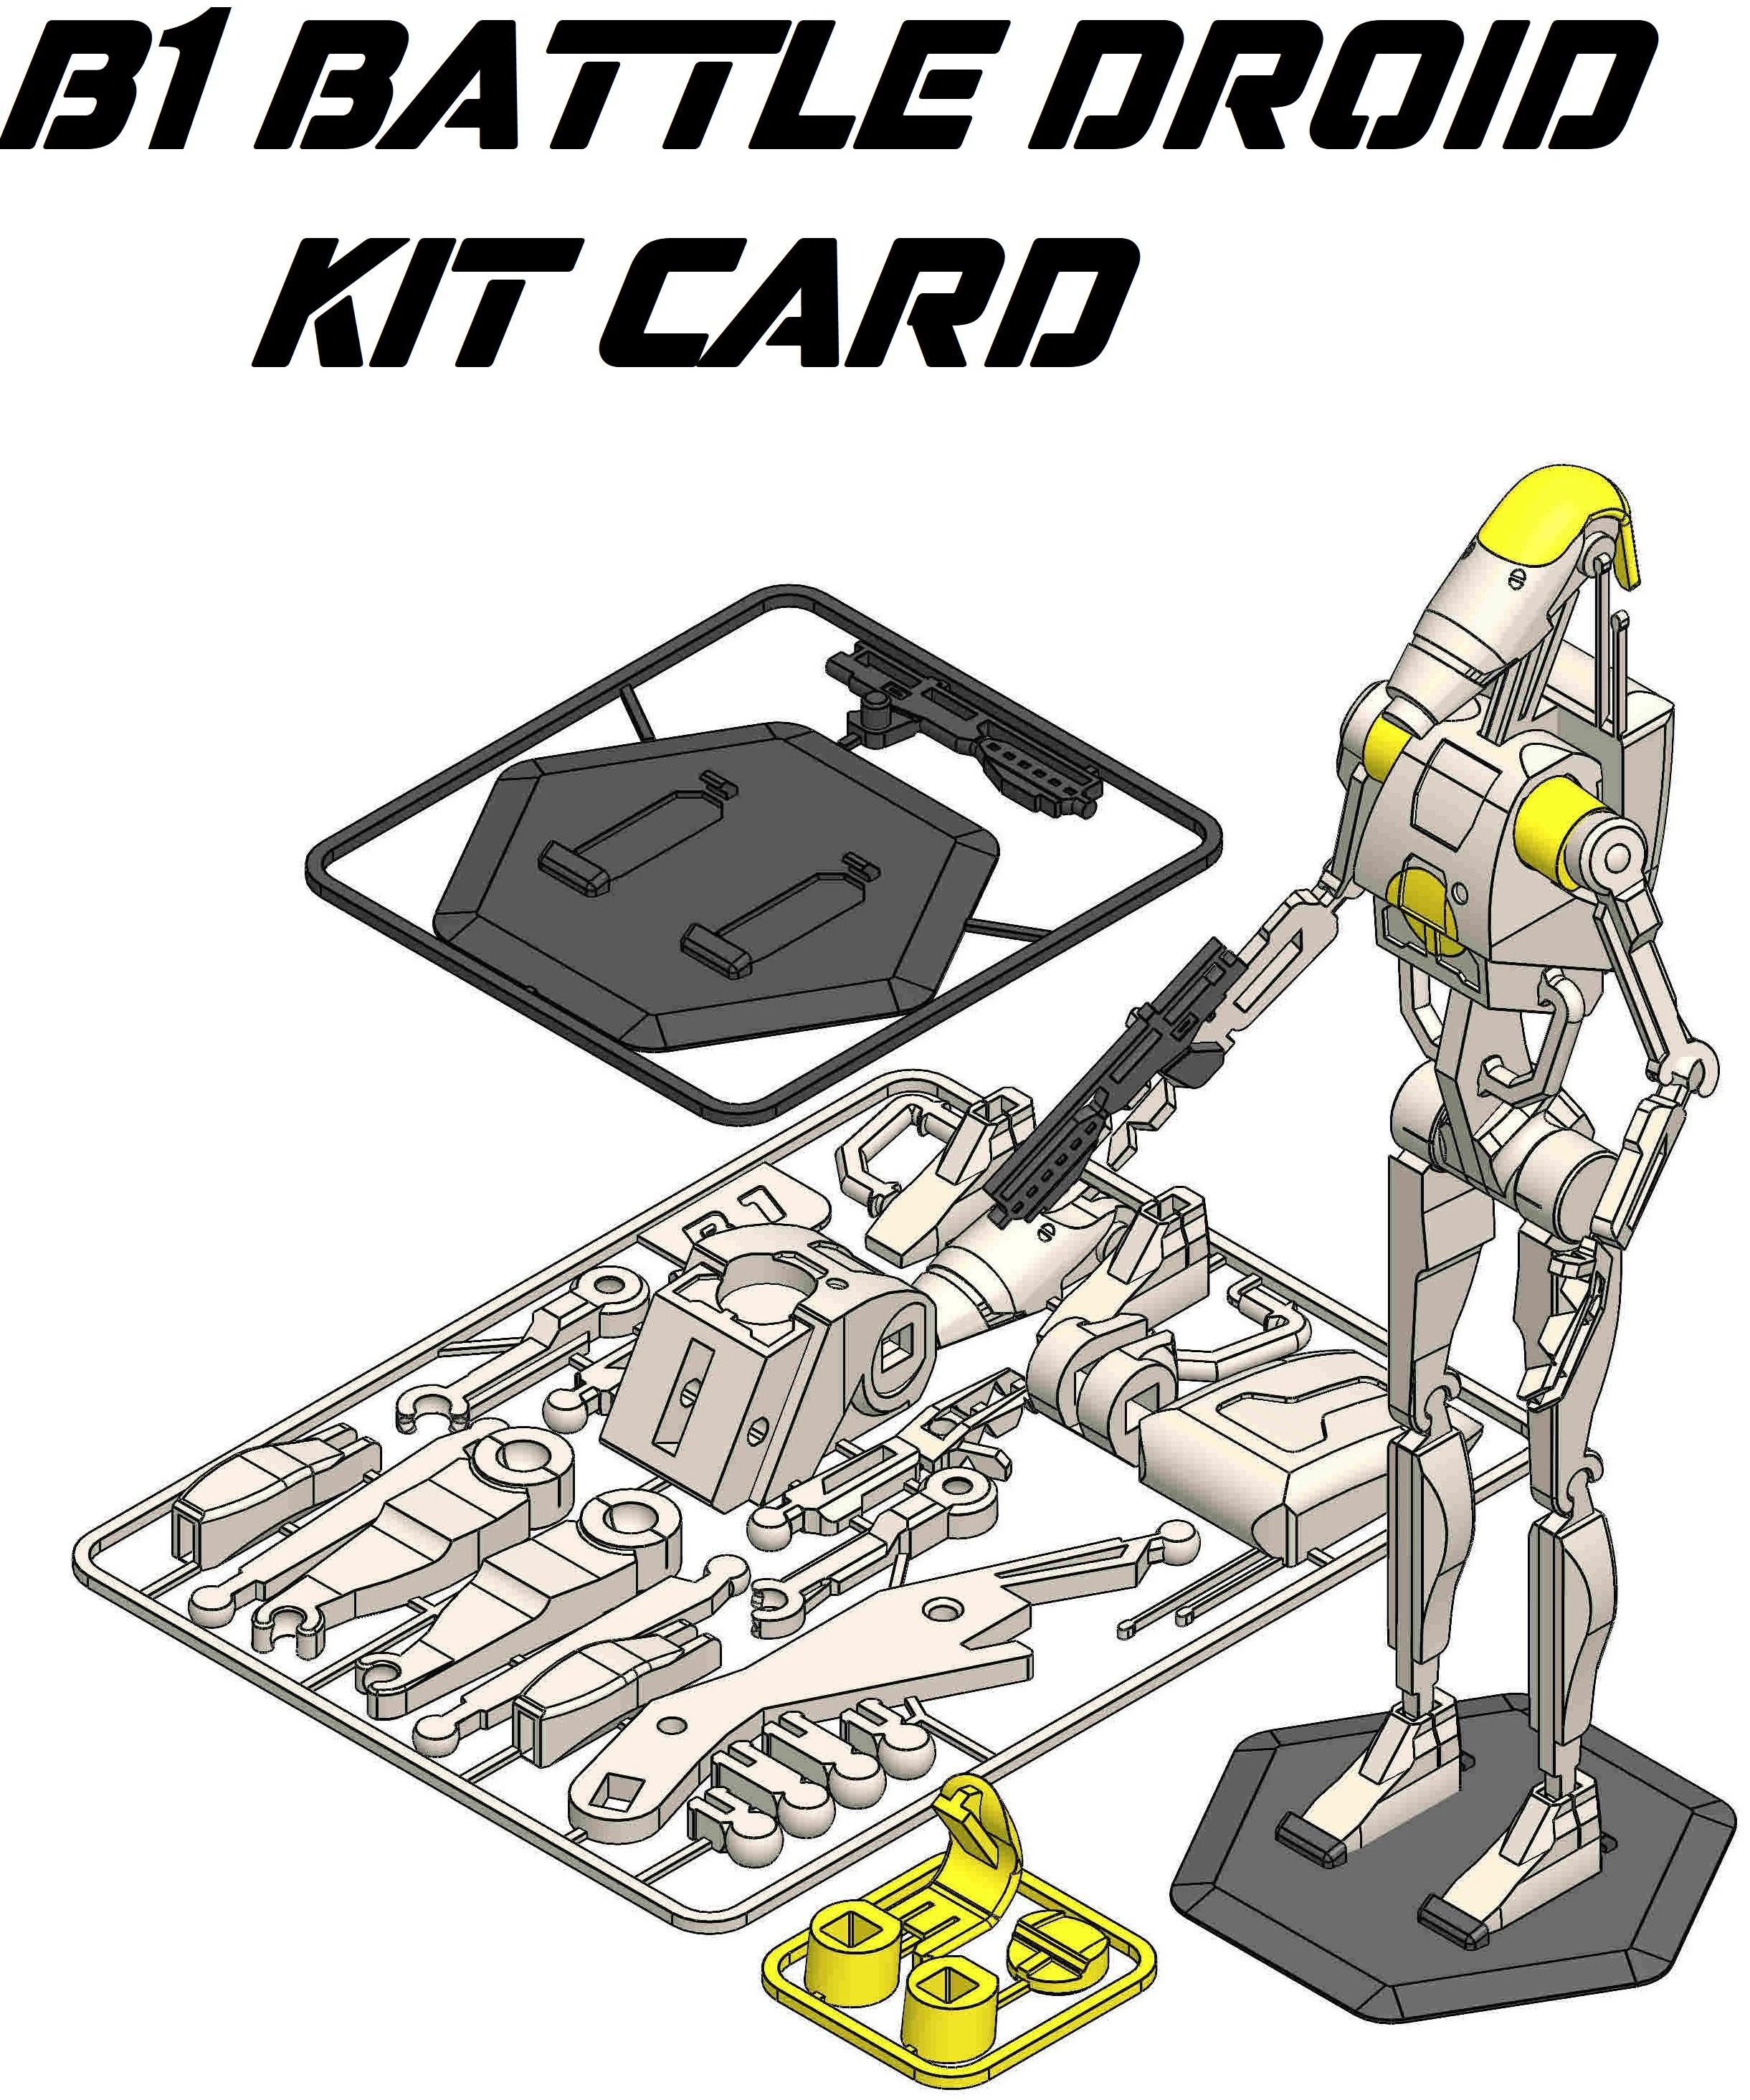 Star Wars B1 Battle Droid 2.0 Kit Card  3d model